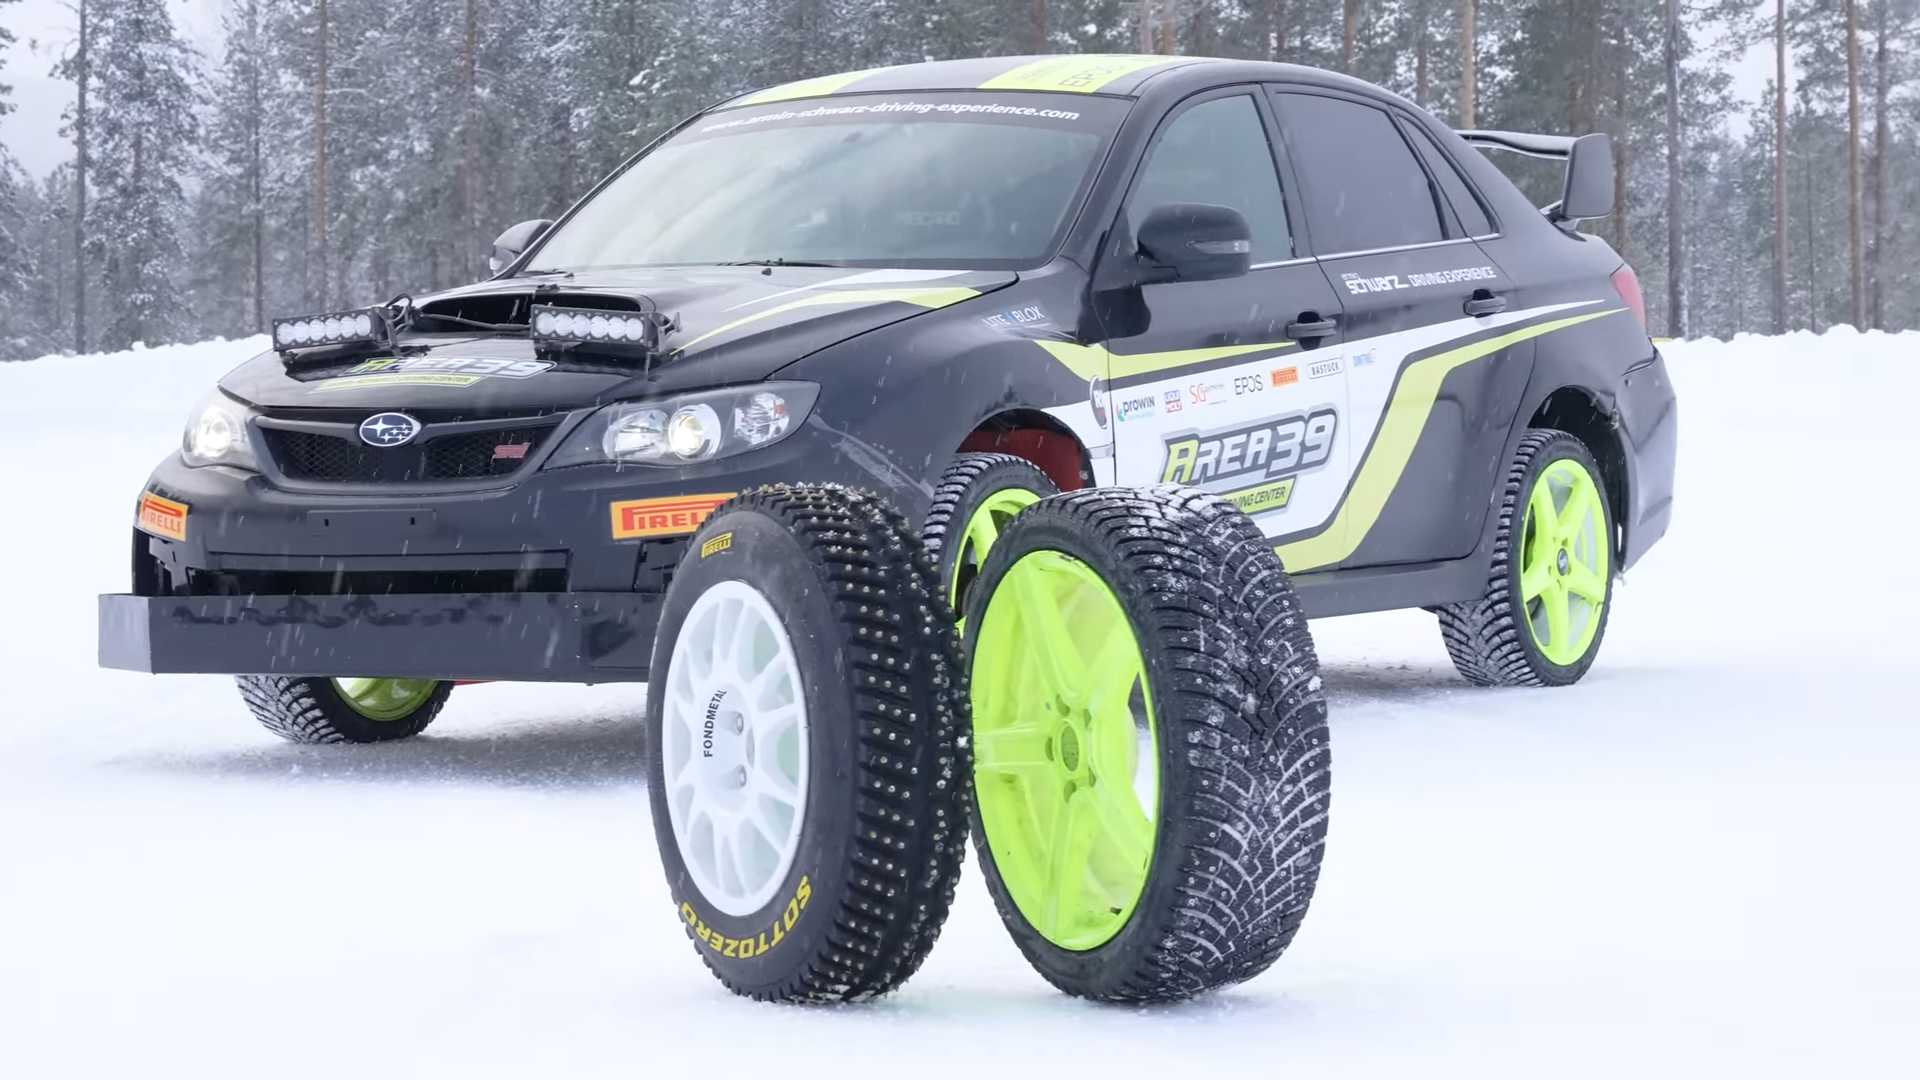 Comparo de pneus cravejados mostra aderência ao gelo inacreditável com pneus WRC Rally